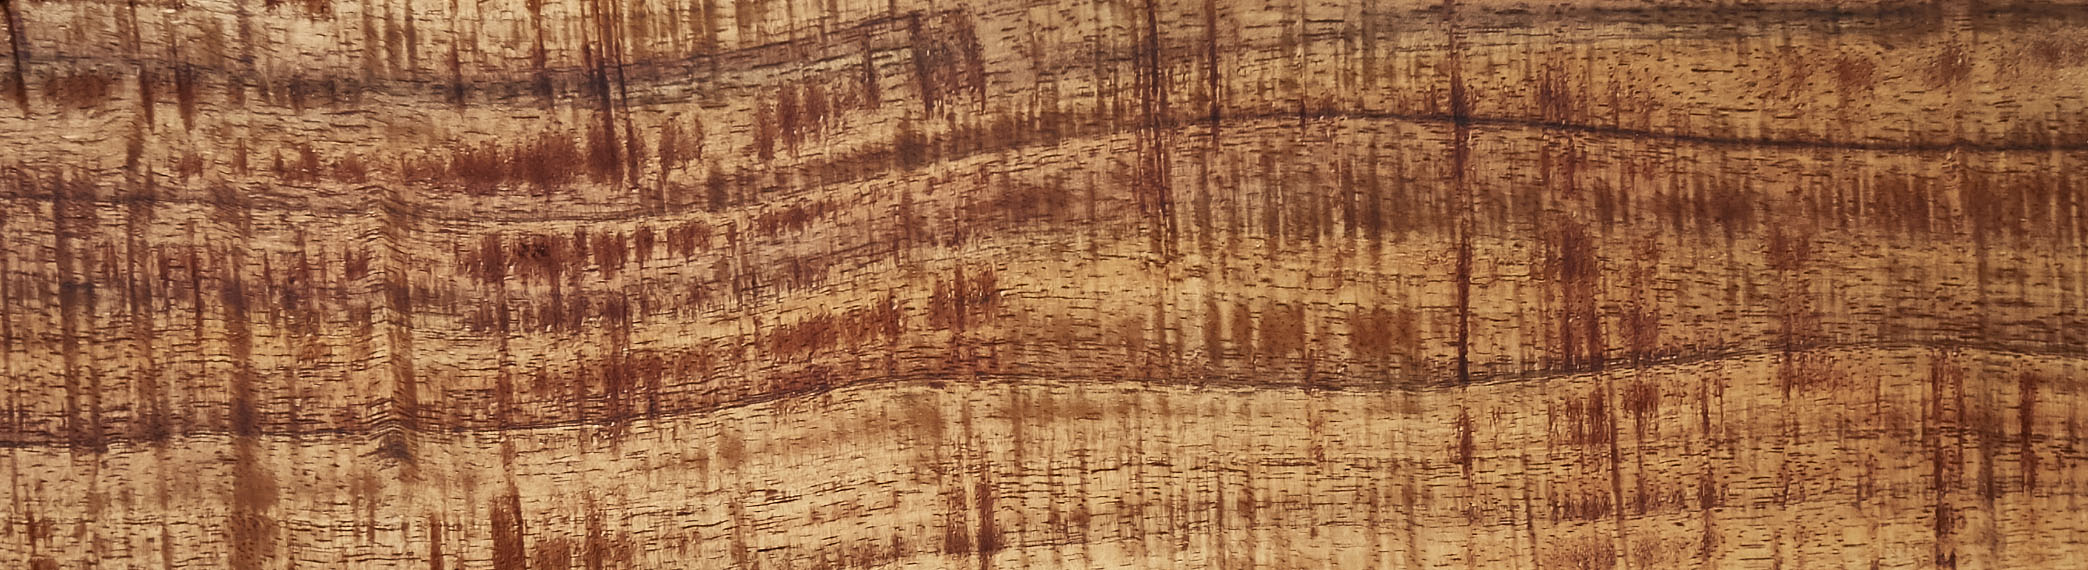 hawaiian koa lumber